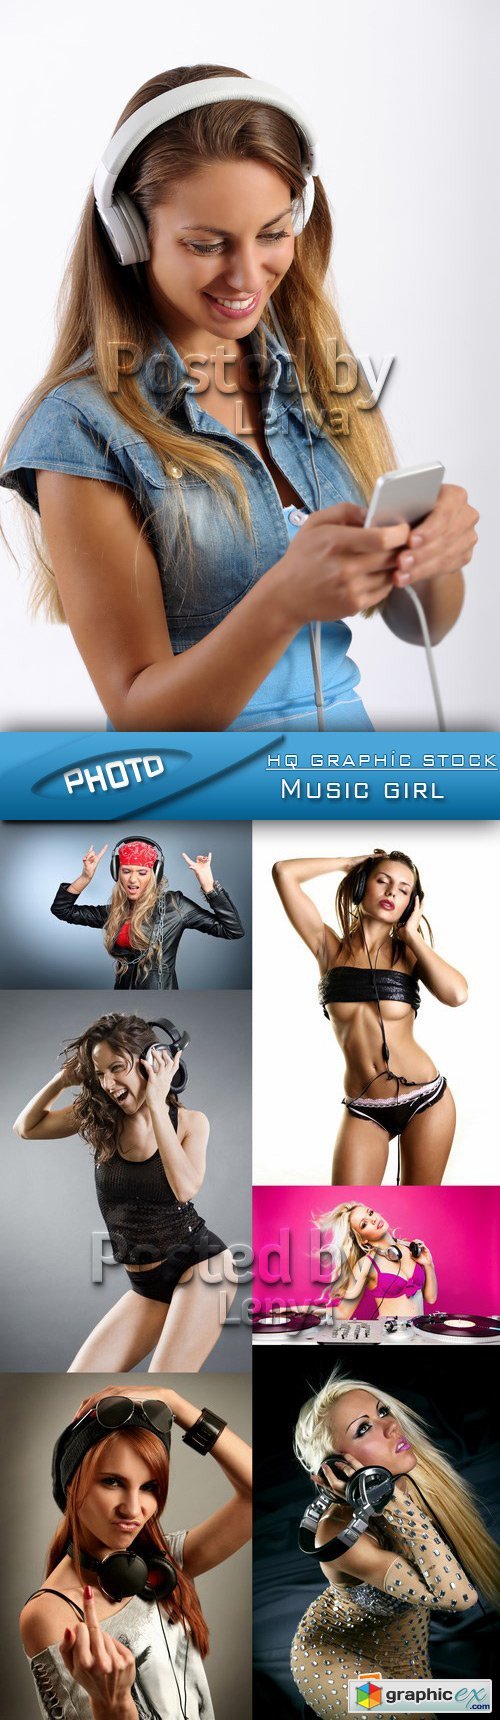 Stock Photo - Music girl